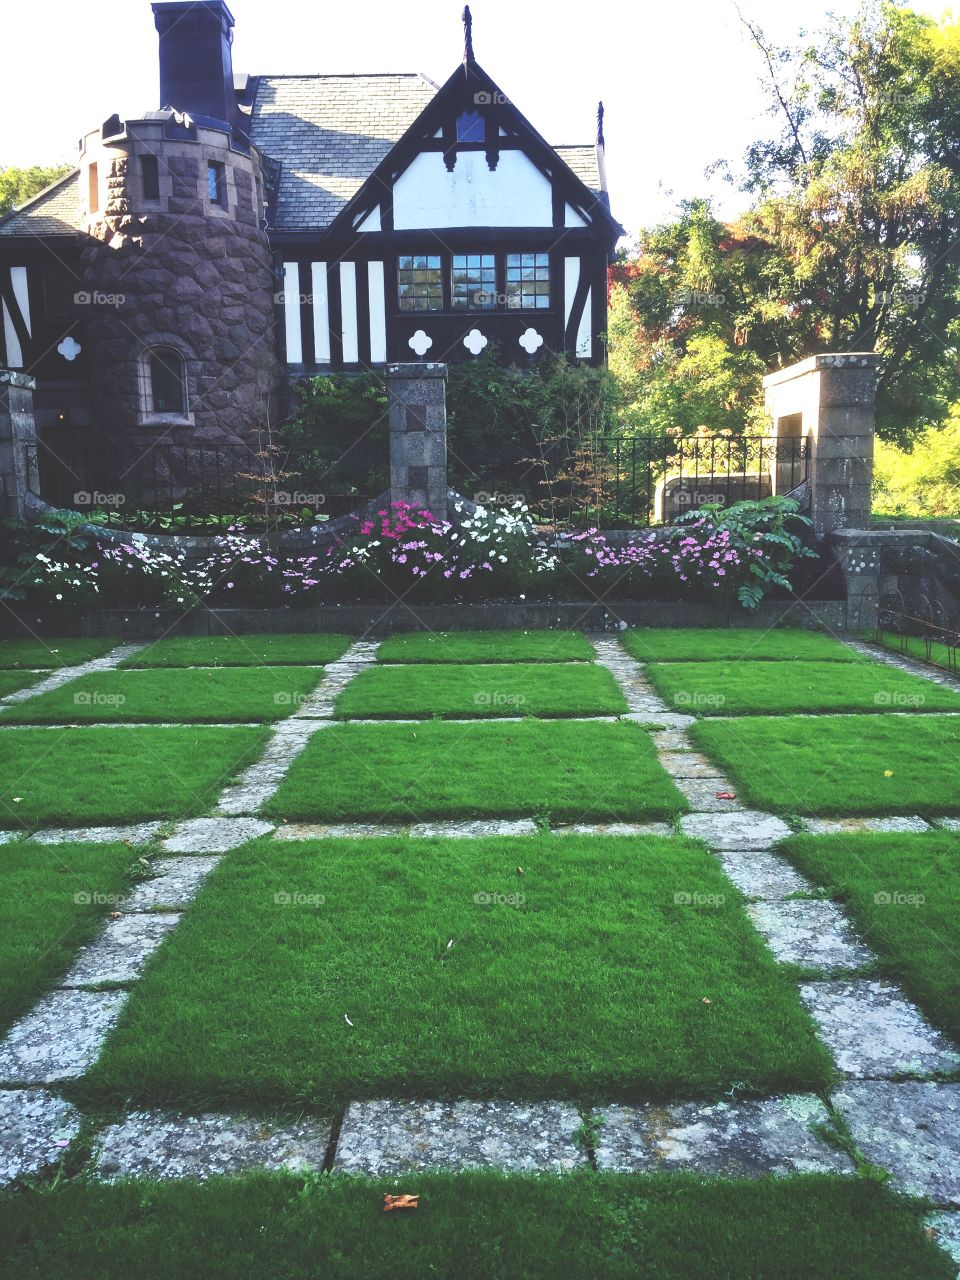 Symetrical lawn